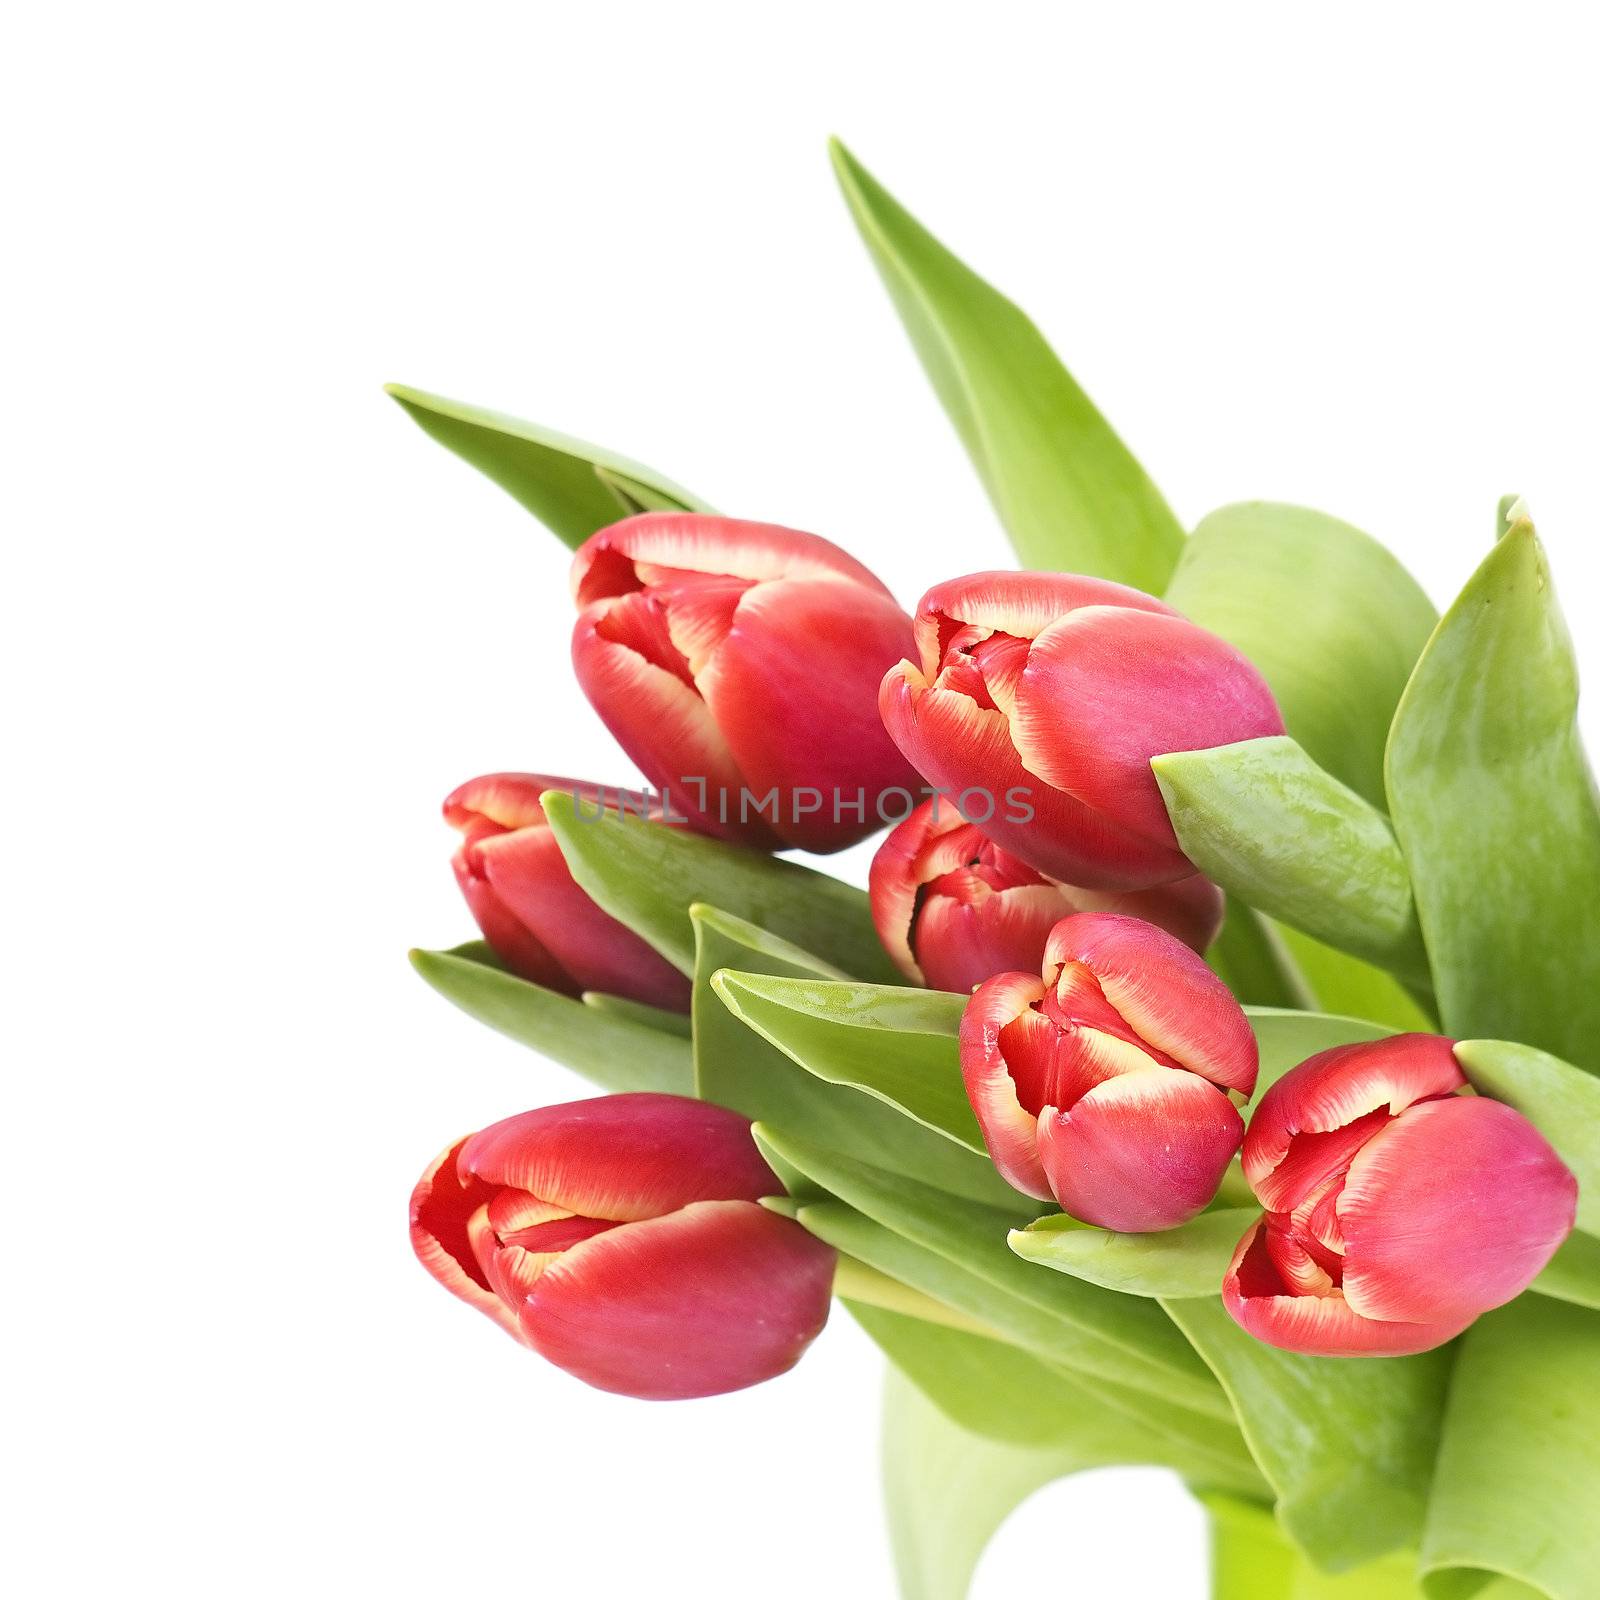 bouquet of fresh tulips by miradrozdowski